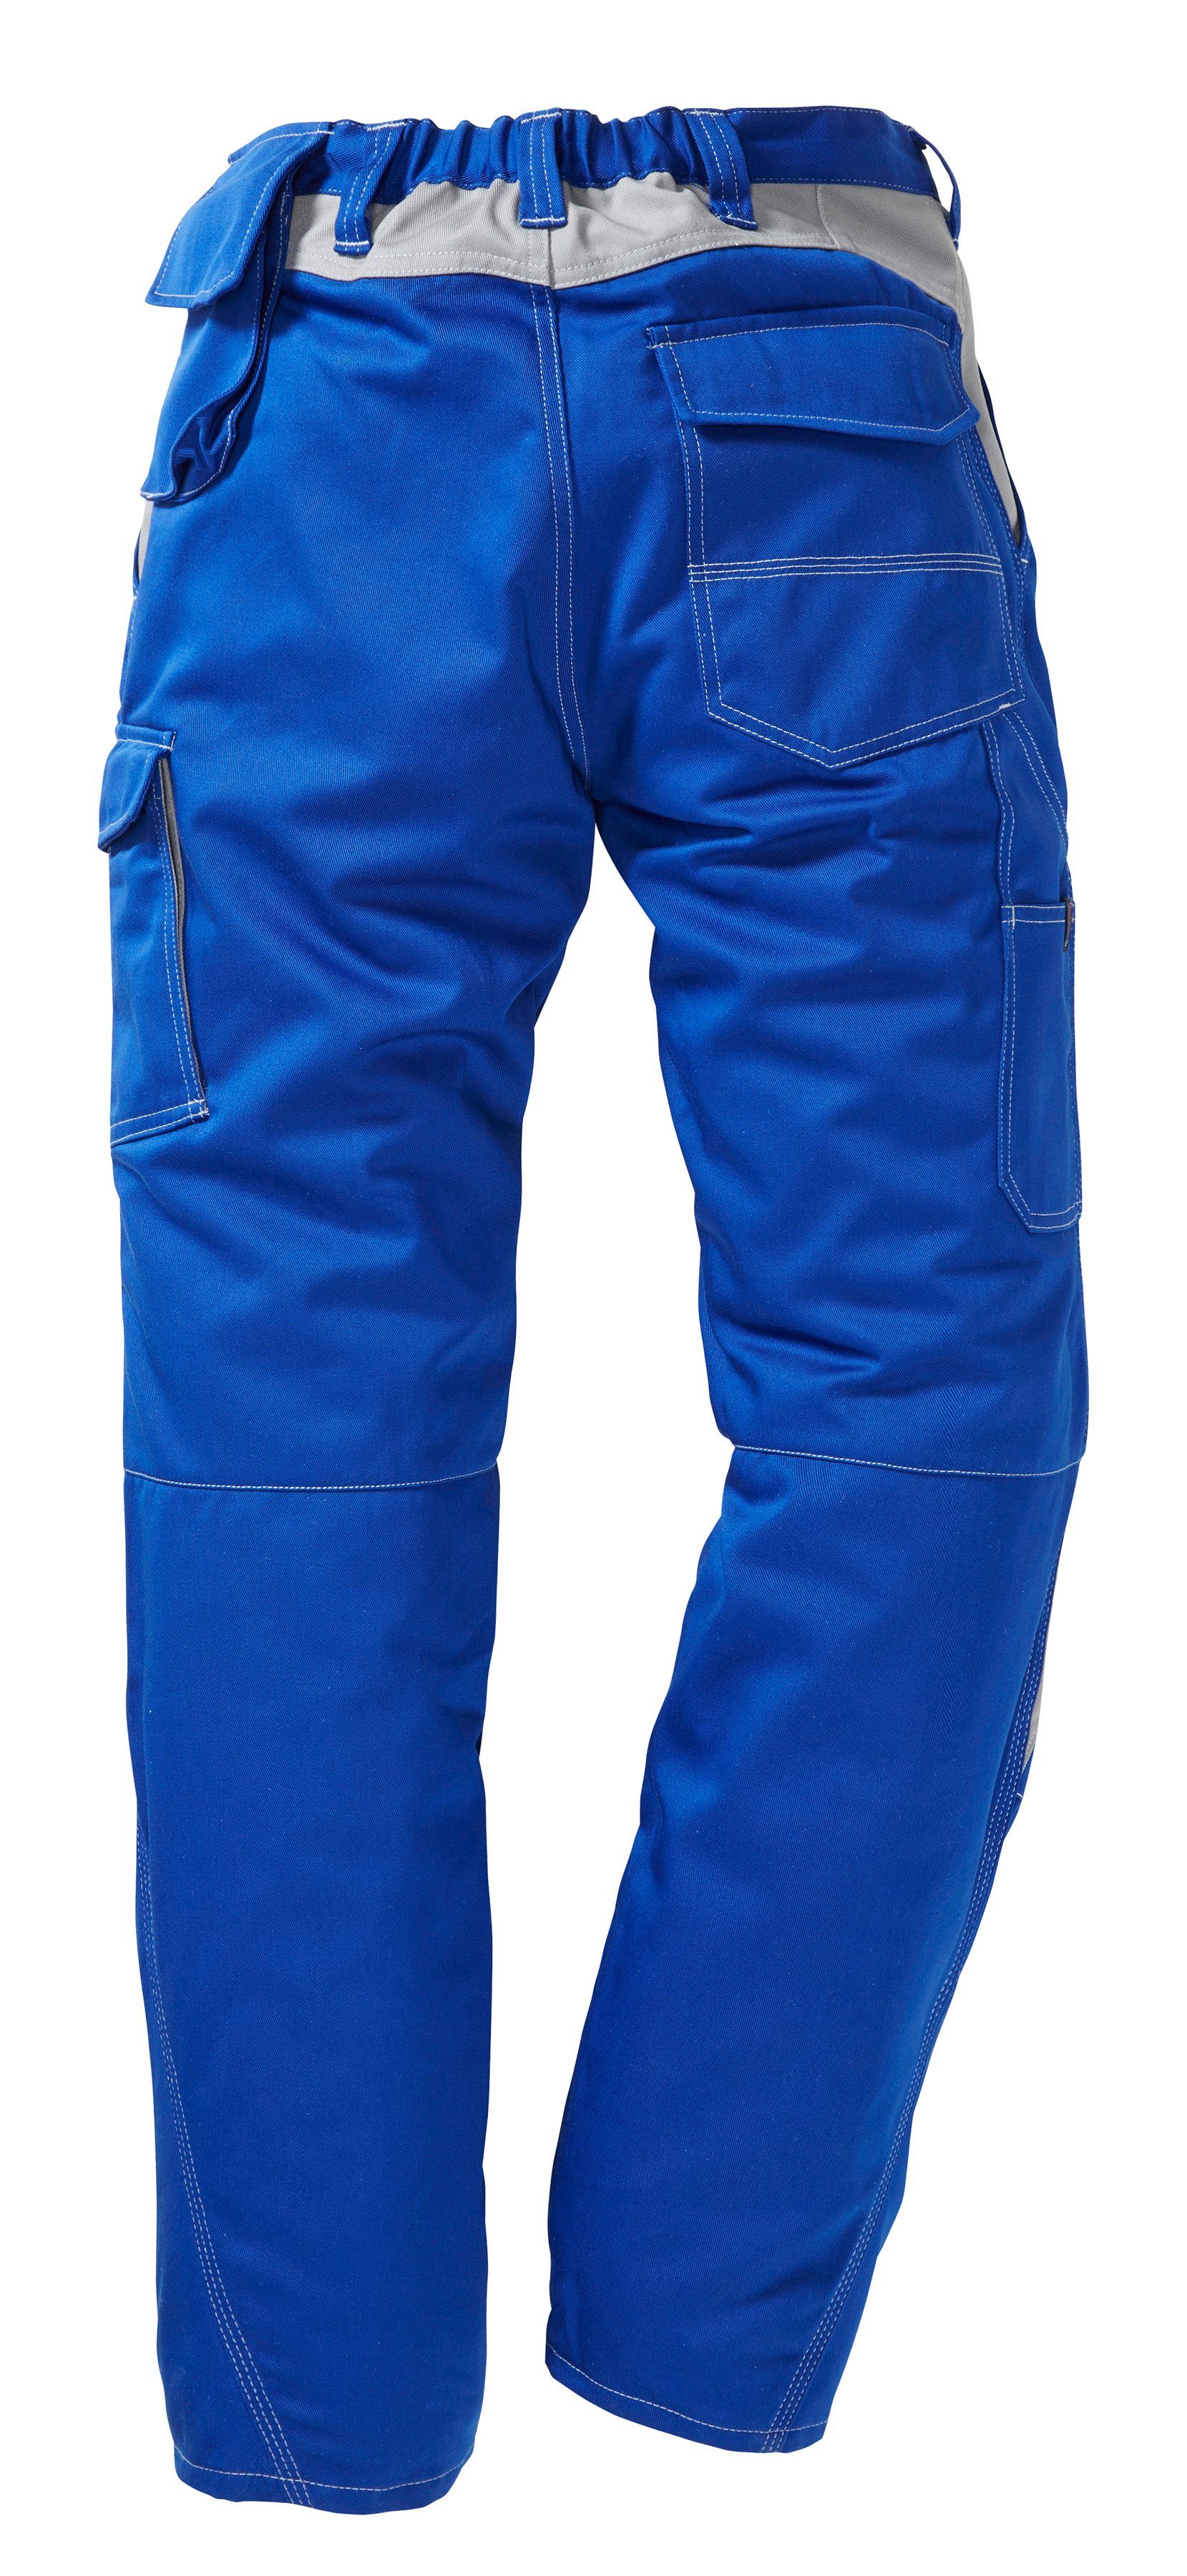 Kübler Arbeitshose Kniepolstertaschen mit blau-grau